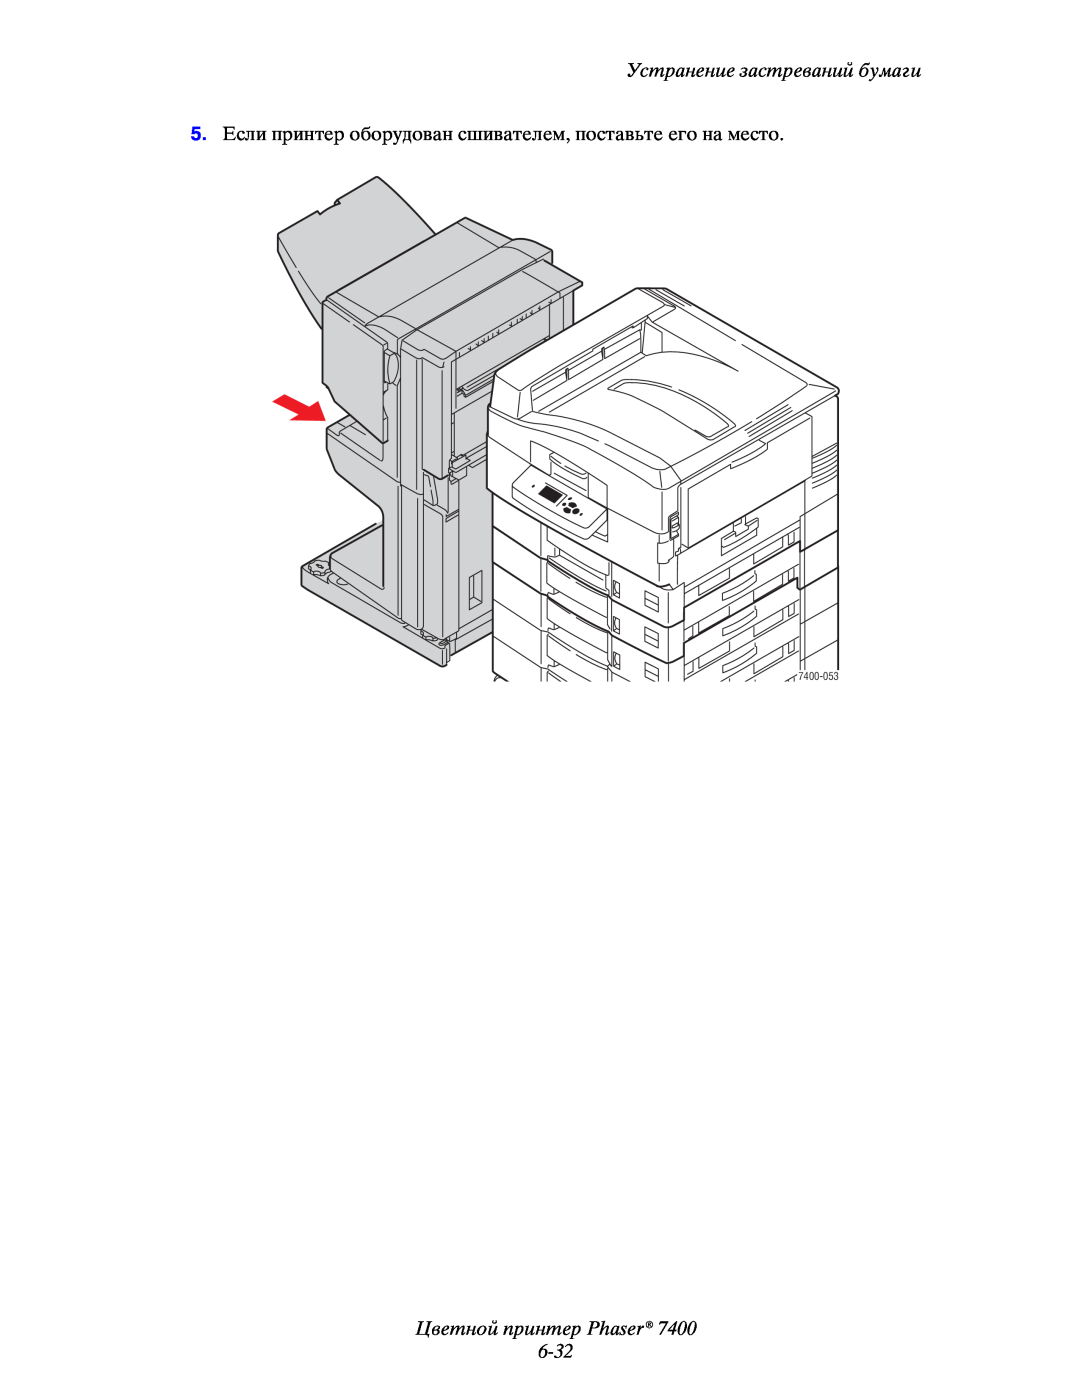 Xerox manual Цветной принтер Phaser 6-32, Устранение застреваний бумаги, 7400-053 